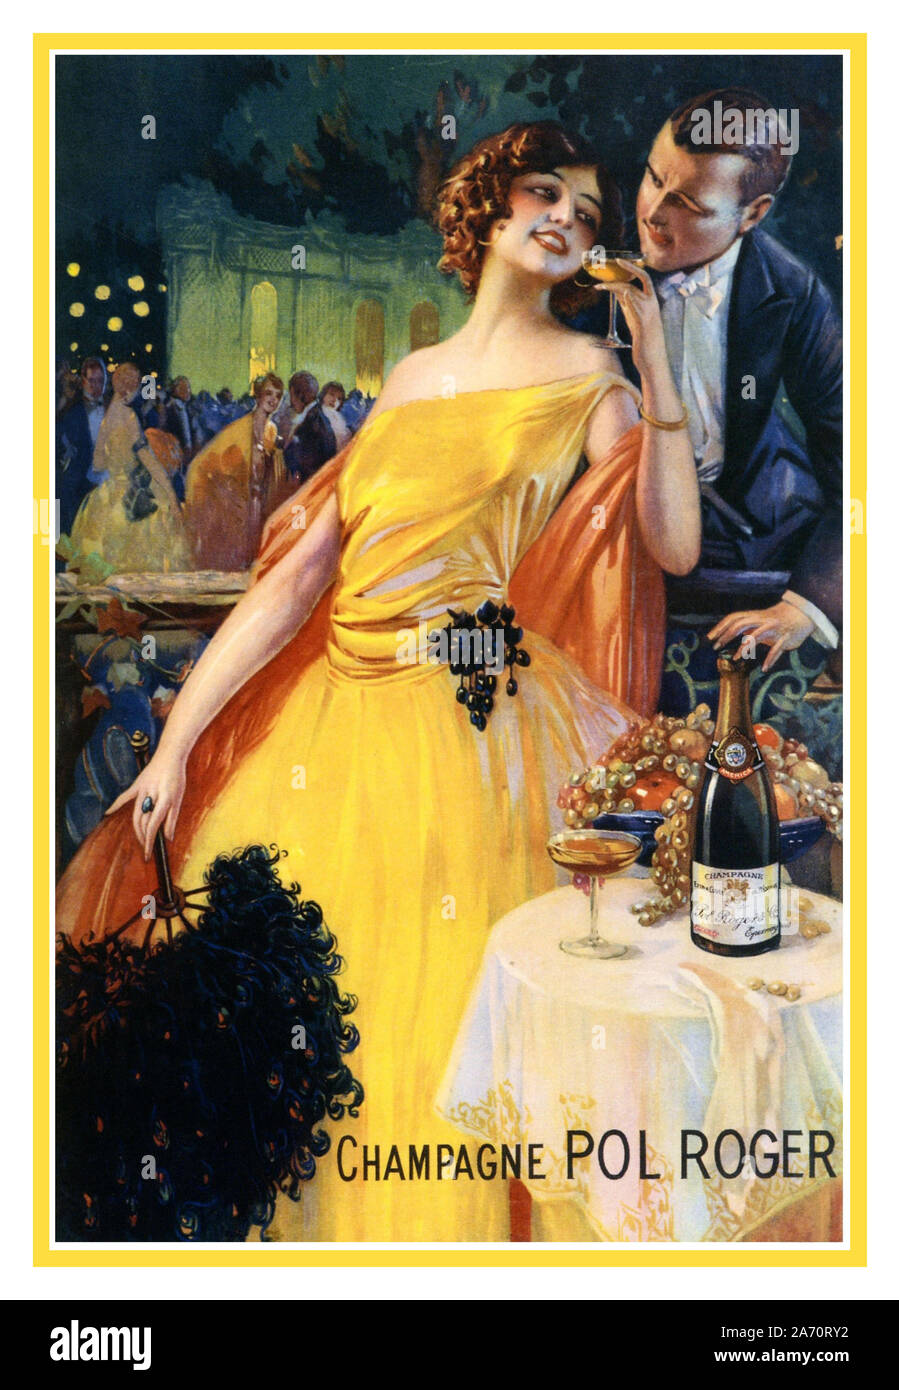 Vintage Champagne Pol Roger affiche publicitaire Français 1920 par Gaspar Camps illustrant une vie de luxe France Banque D'Images